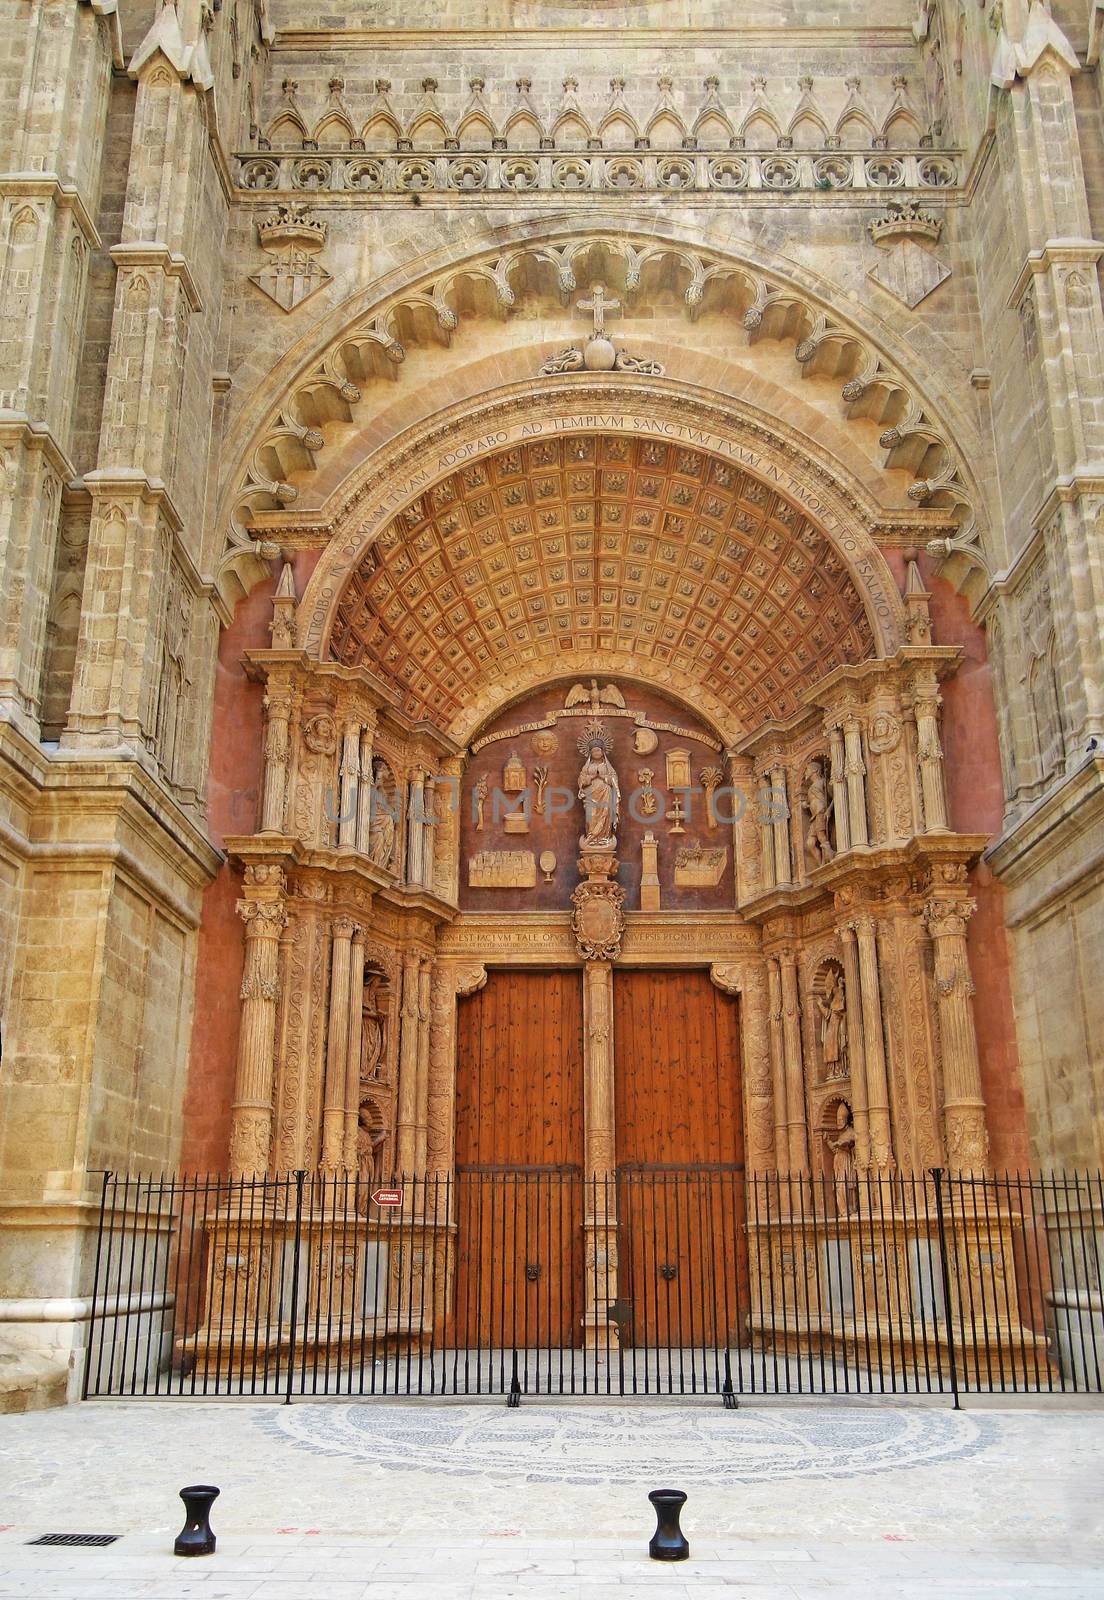 La Seu entrance, Palma de Majorca by aldorado